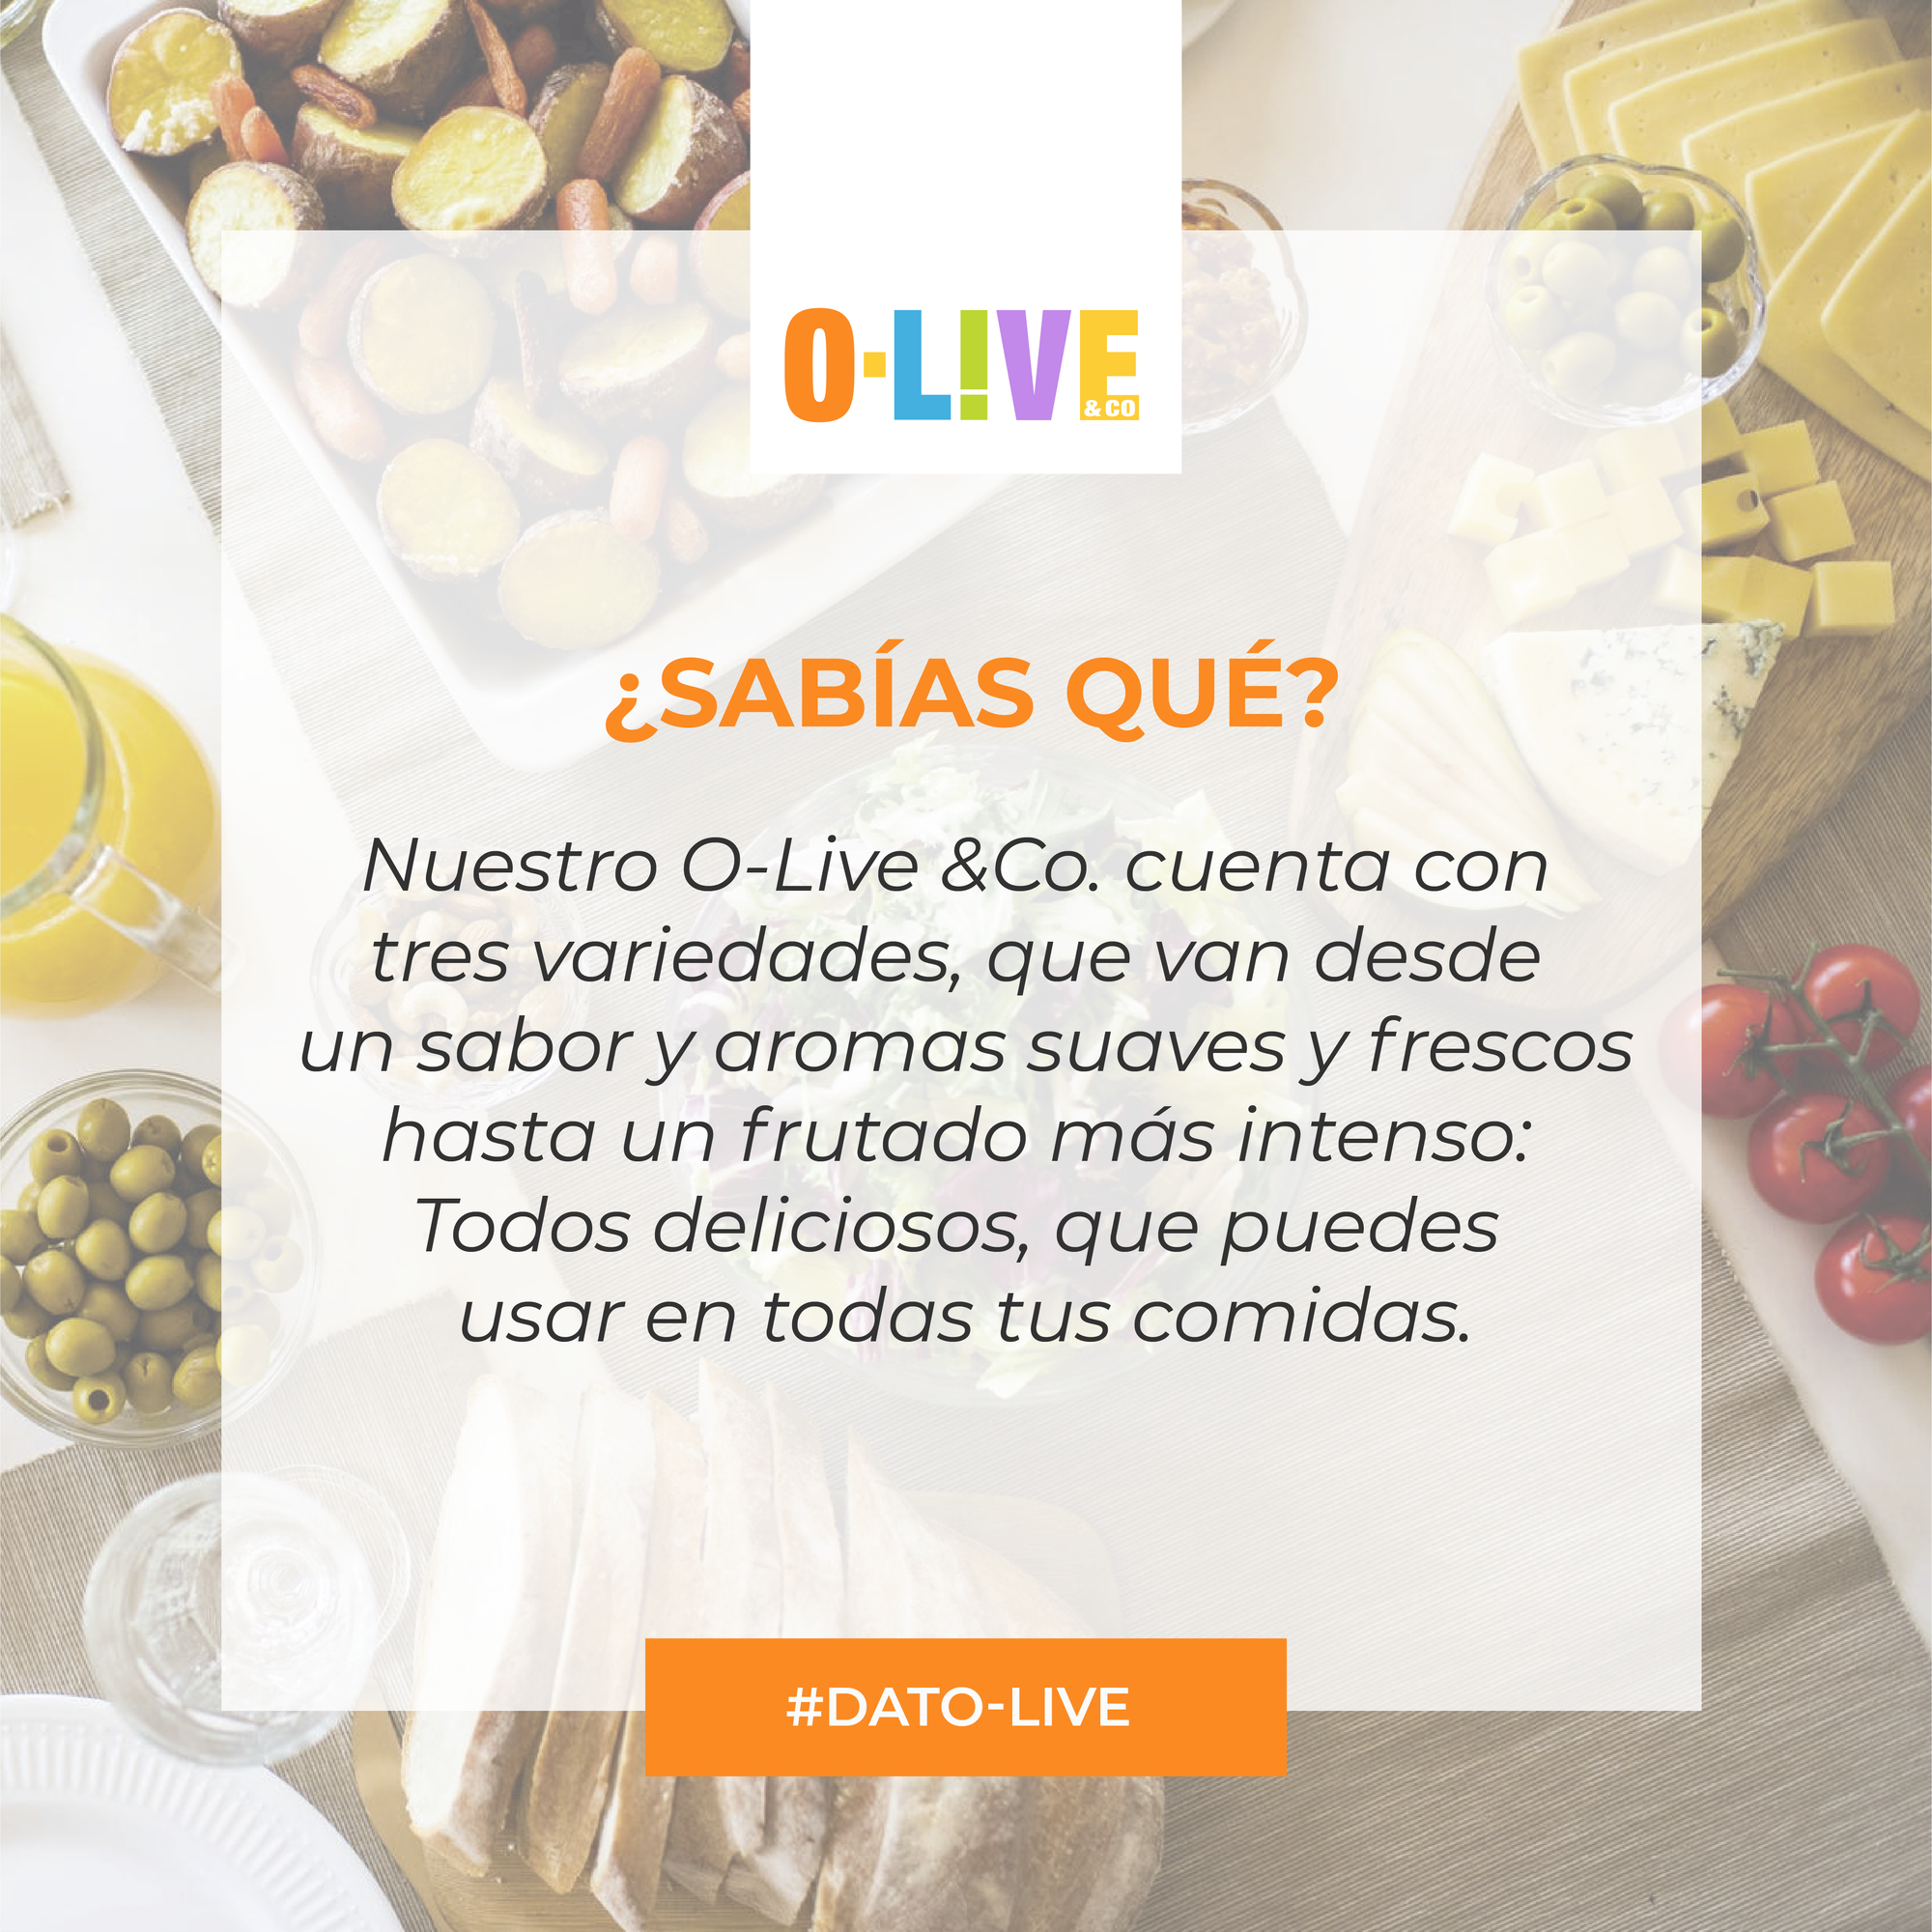 Portada de dato O-Live que muestra el texto: " Variedades de nuestro Aceite de Oliva"